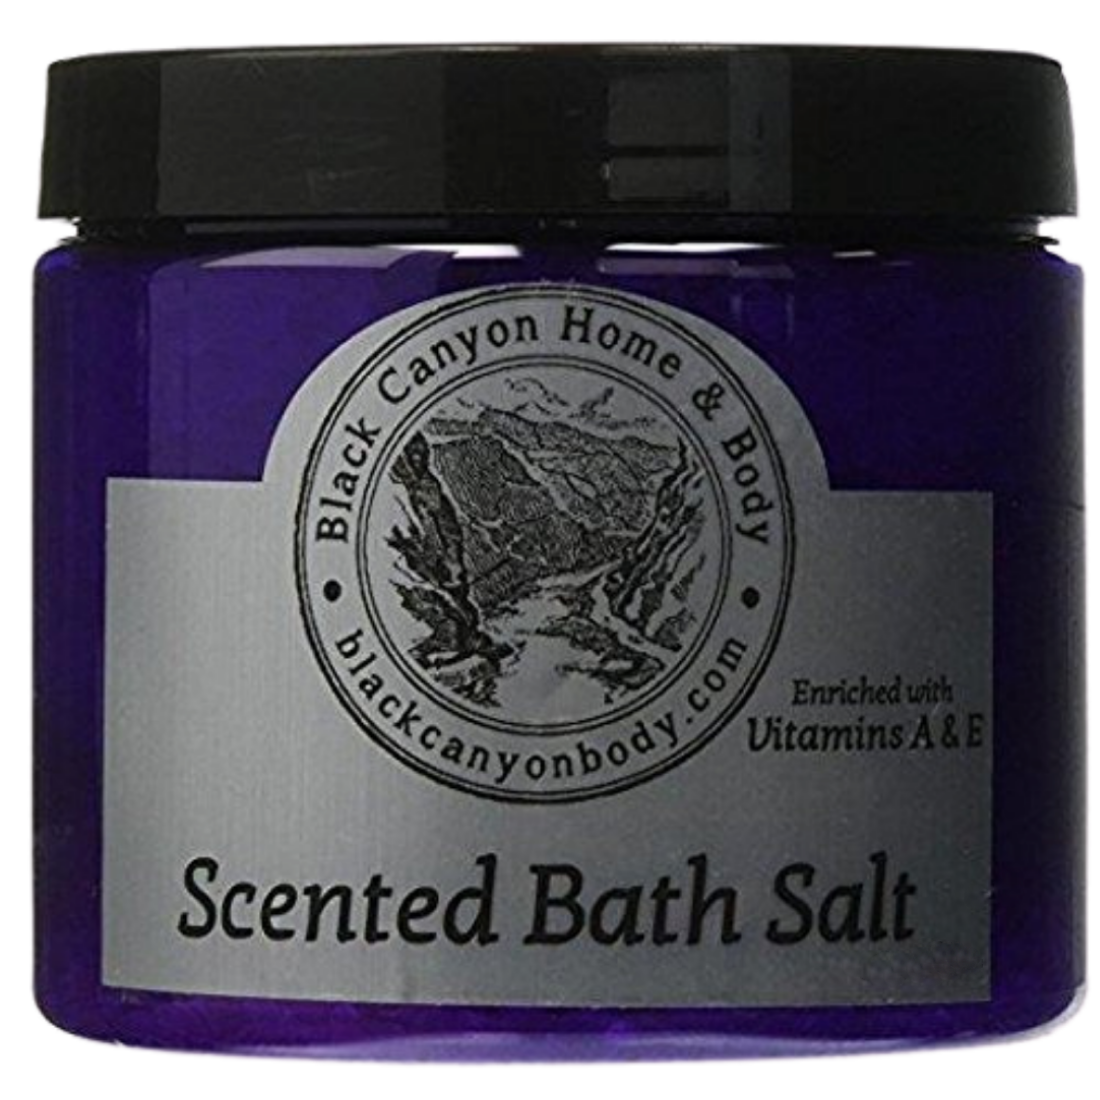 Black Canyon Butter Brickle Scented Epsom Salt Bath Soak